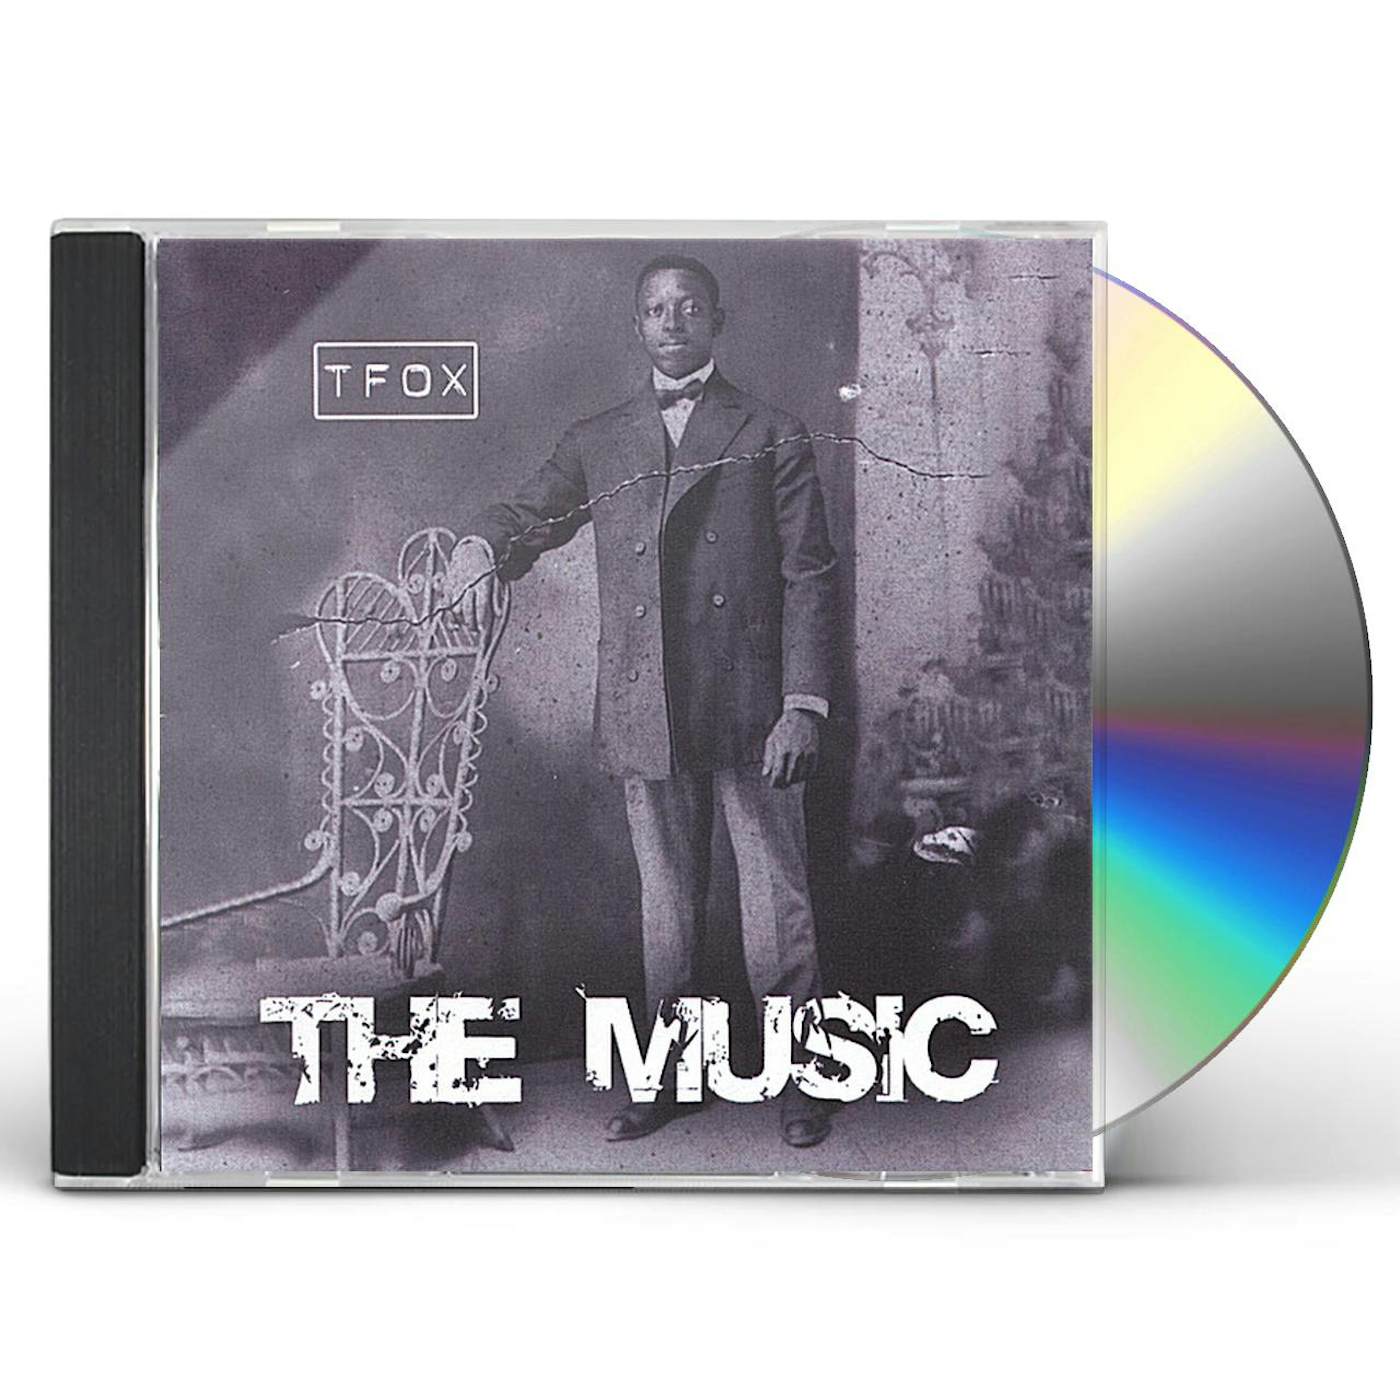 TFOX MUSIC CD